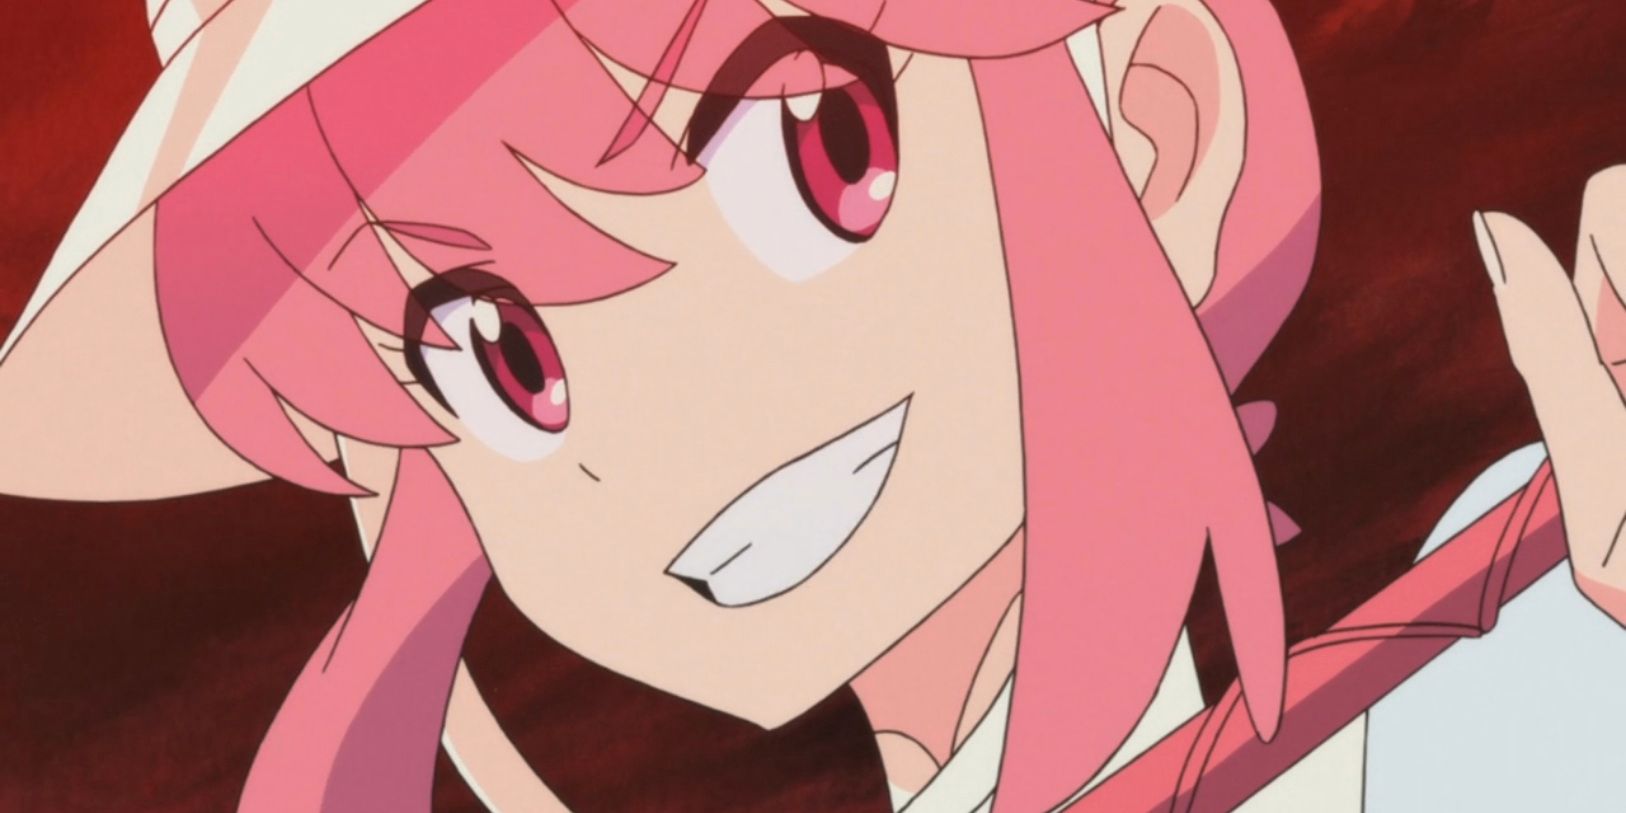 Los 15 mejores personajes de anime con pelo rosa, clasificados | Cultture